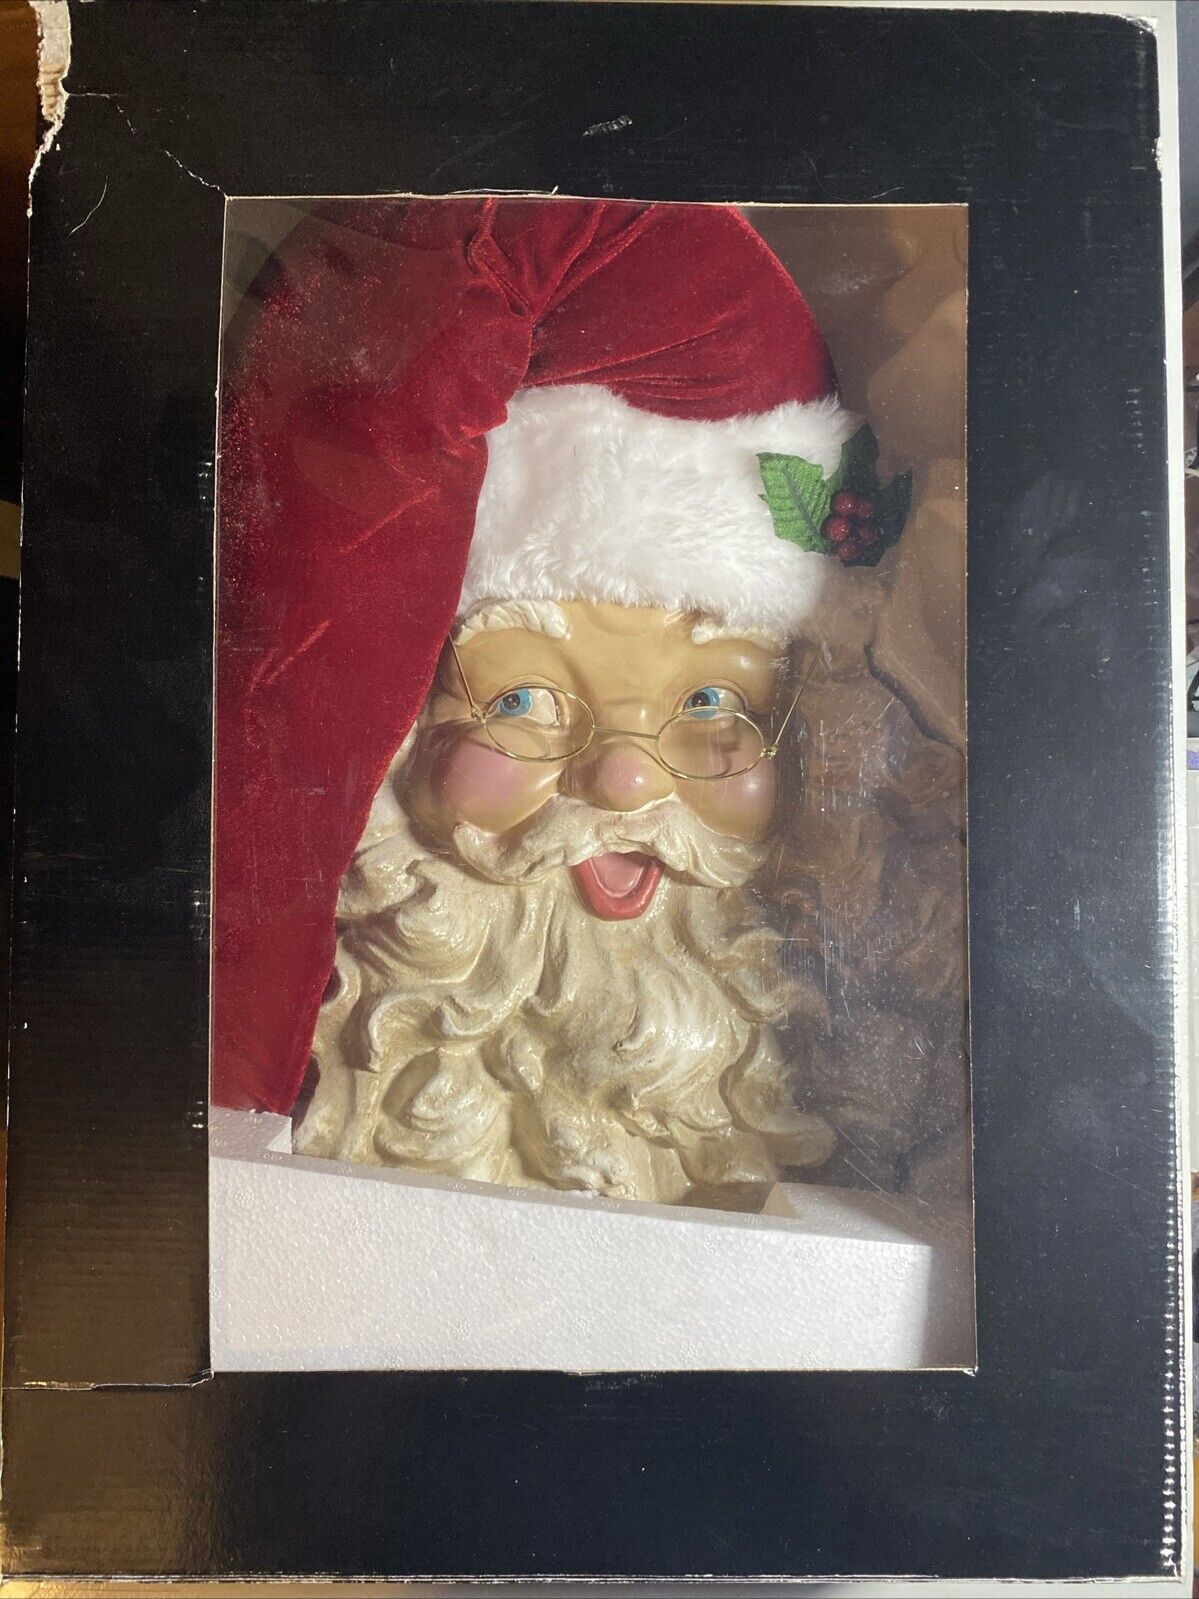 Hobby Lobby Jumbo Santa Claus Head Wall Decor. Size 22x14x5.5in New In Box